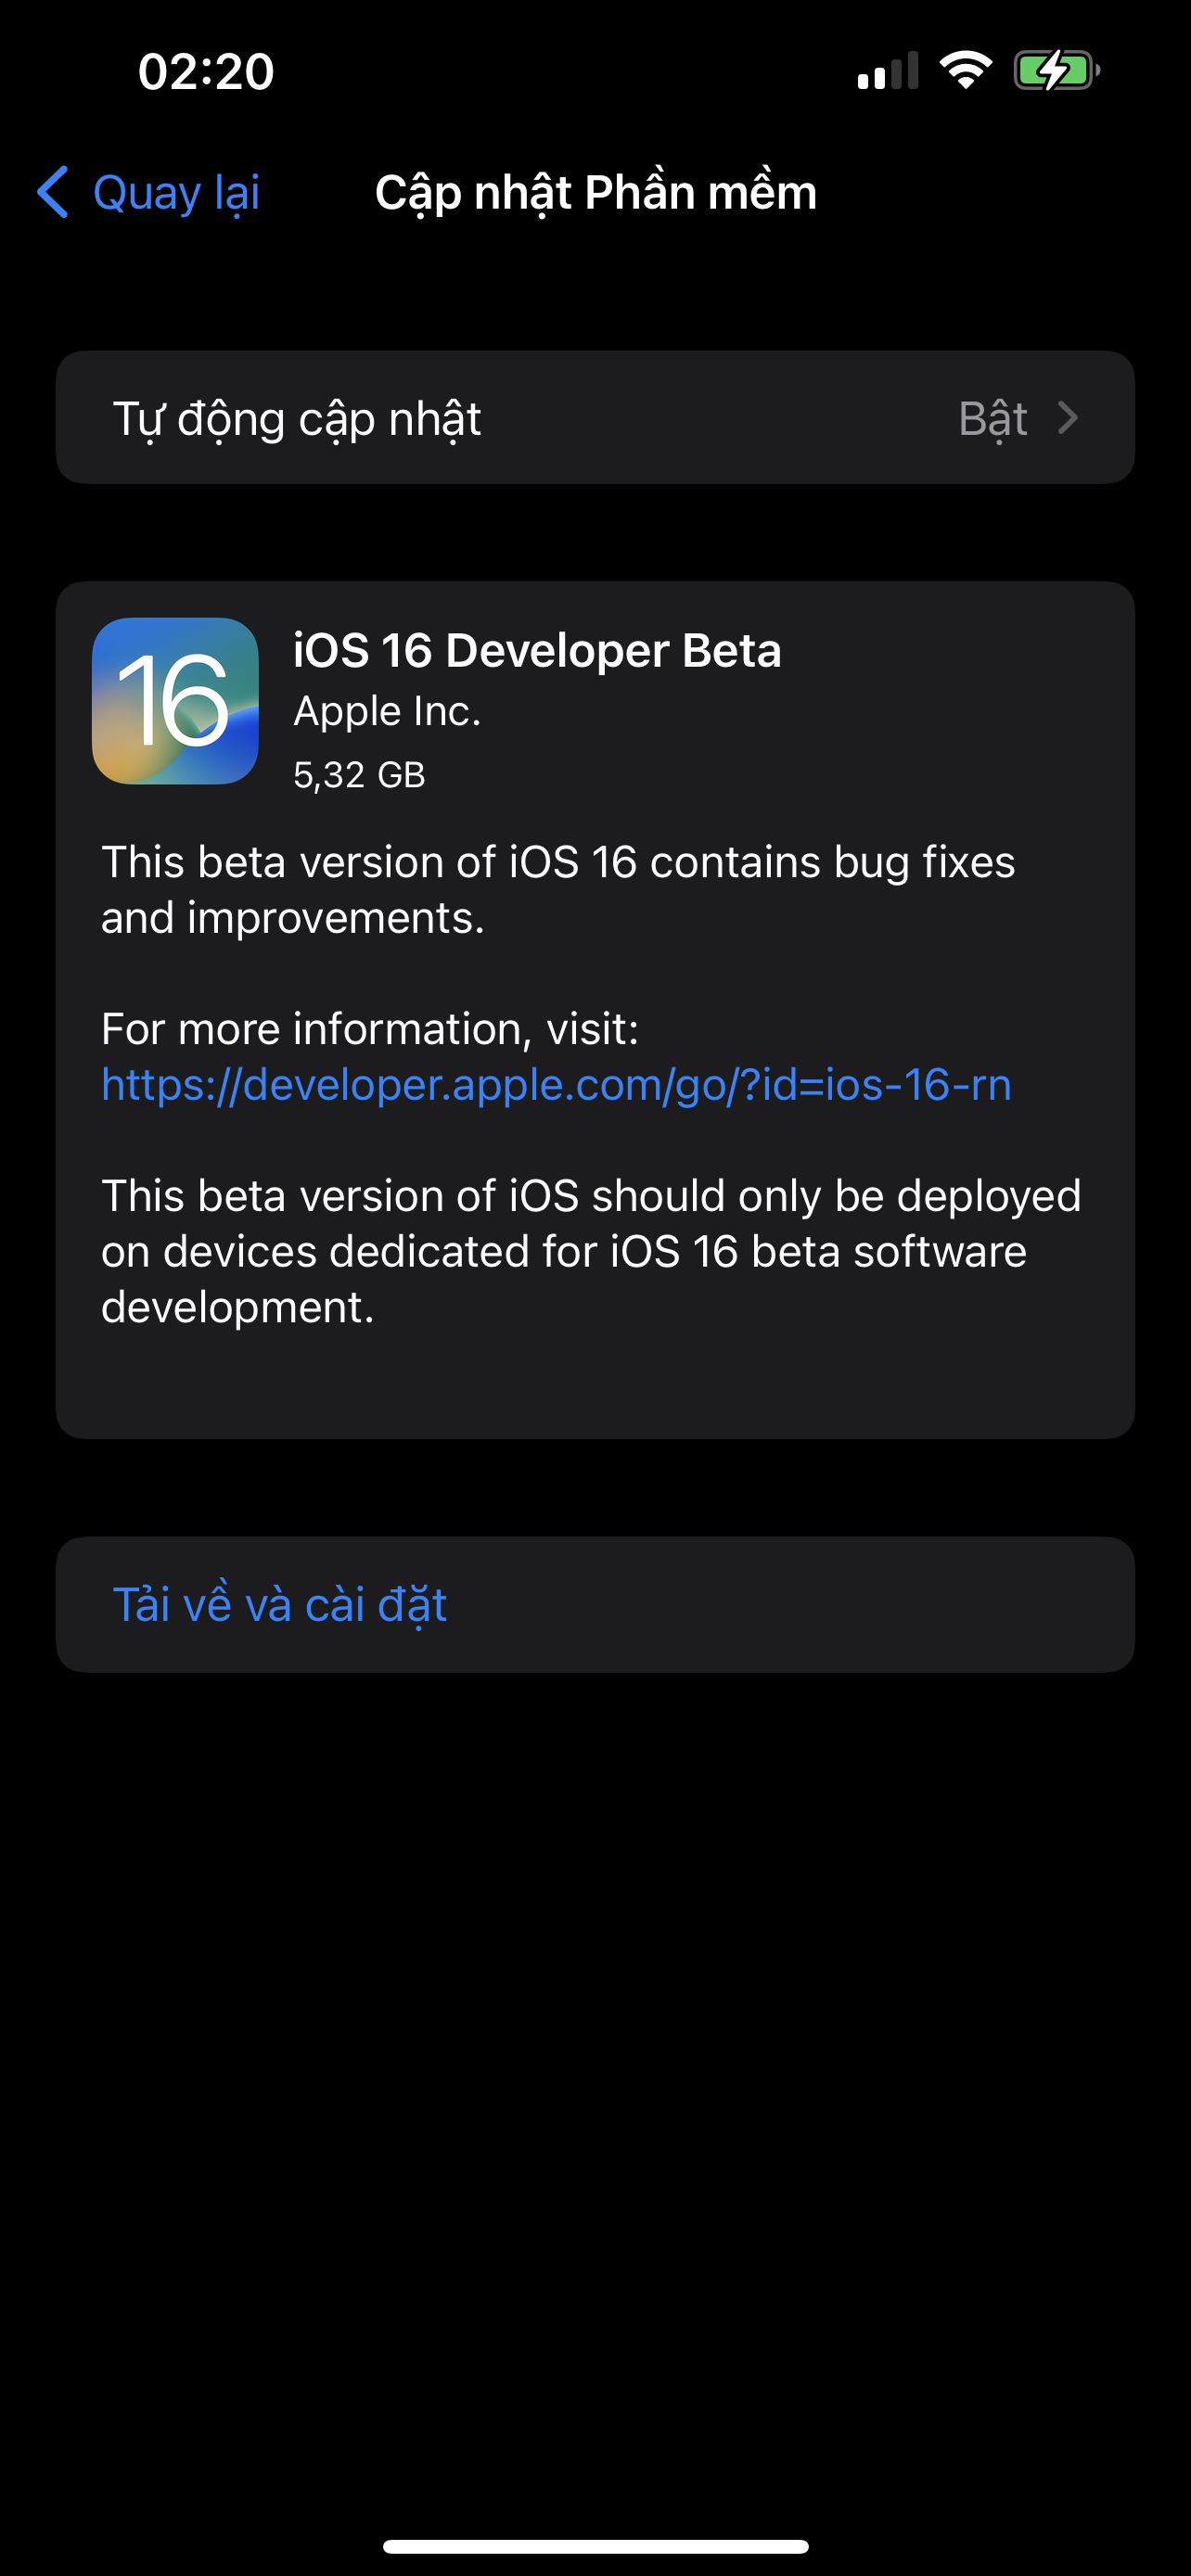 Danh sách các thiết bị được hỗ trợ nâng cấp lên iOS 16